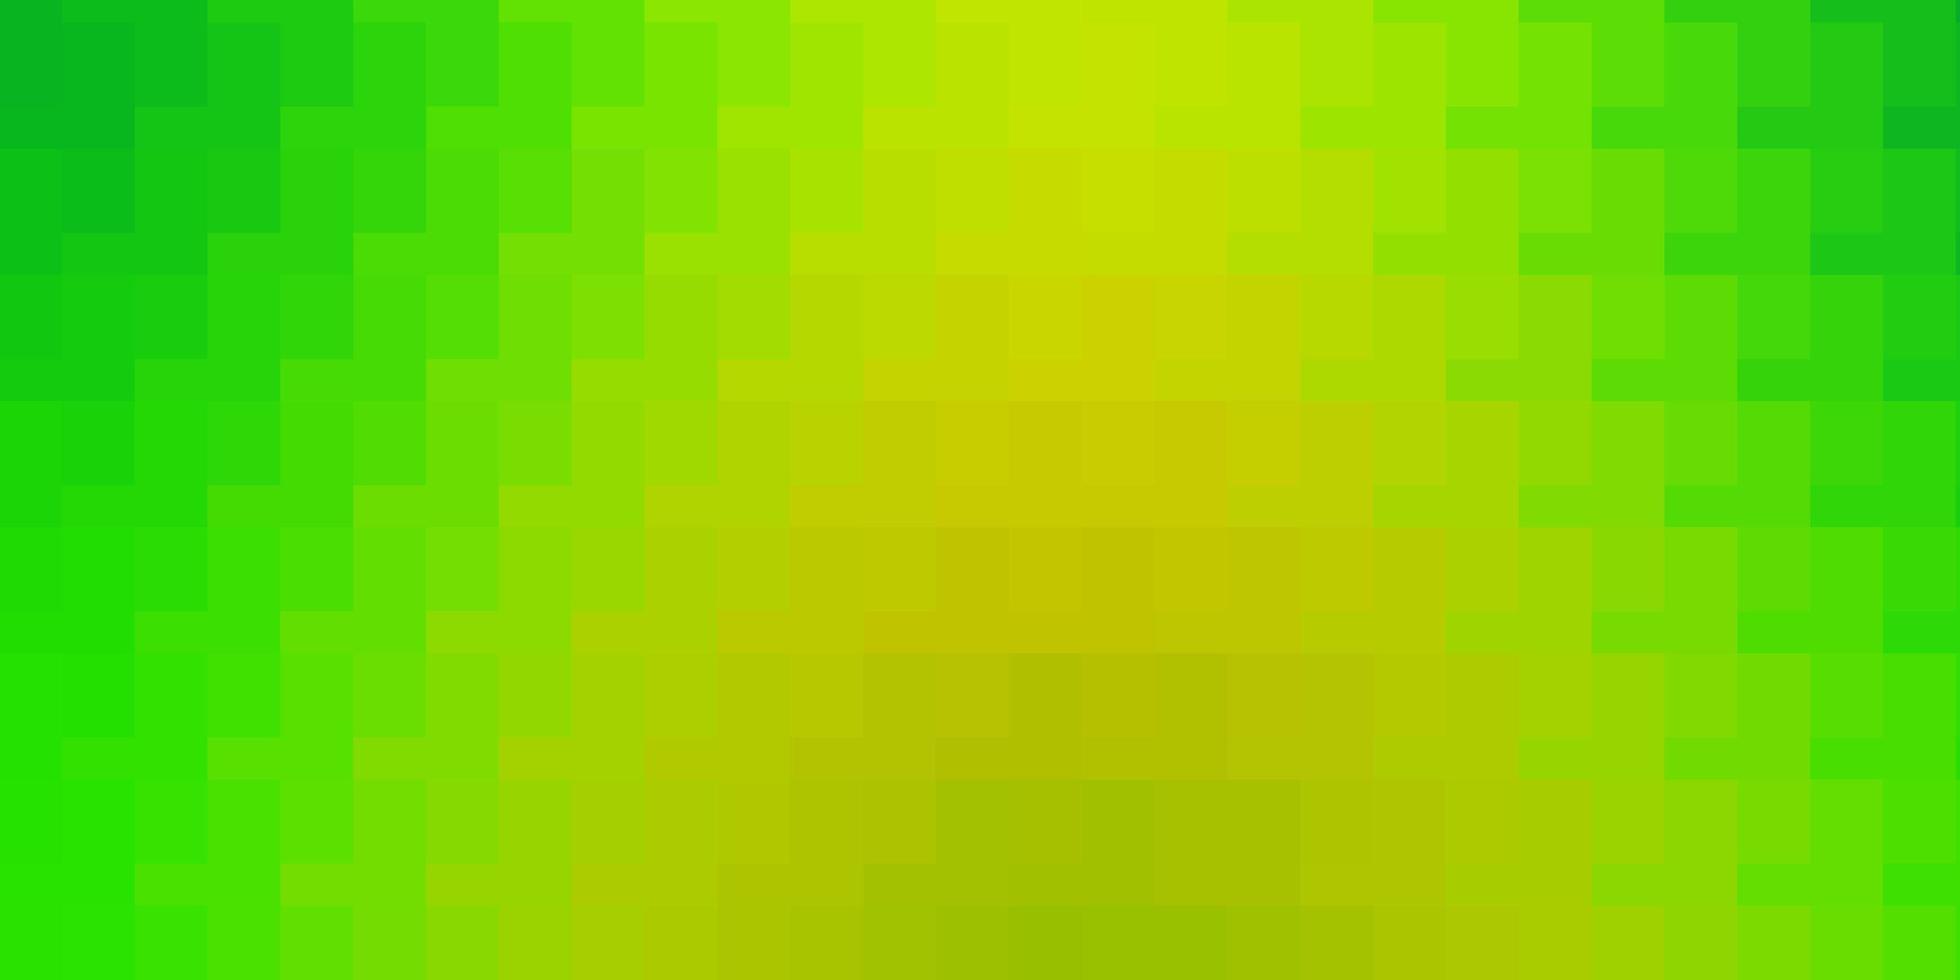 lichtgroen geel vector textuur in rechthoekige stijl modern design met rechthoeken in abstracte stijl patroon voor zakelijke boekjes folders